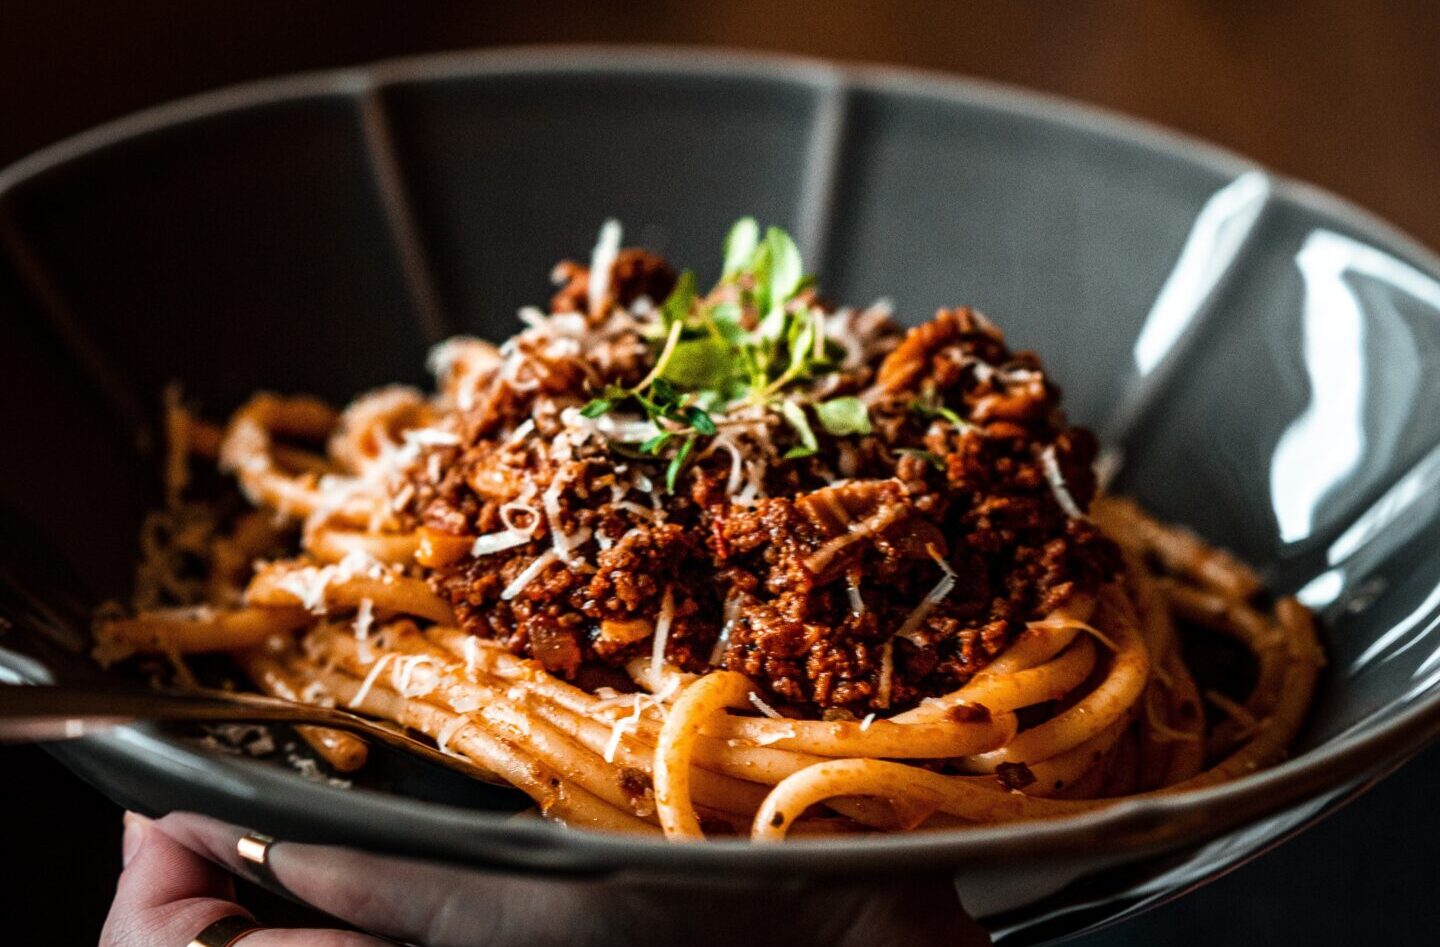 Bilden visar en tallrik med en pastarätt. Italiensk mat är känt för att vara väldigt god och hos en italiensk restaurang i Göteborg kan du uppleva detta på italiensk buffé, catering, eller via tapas.